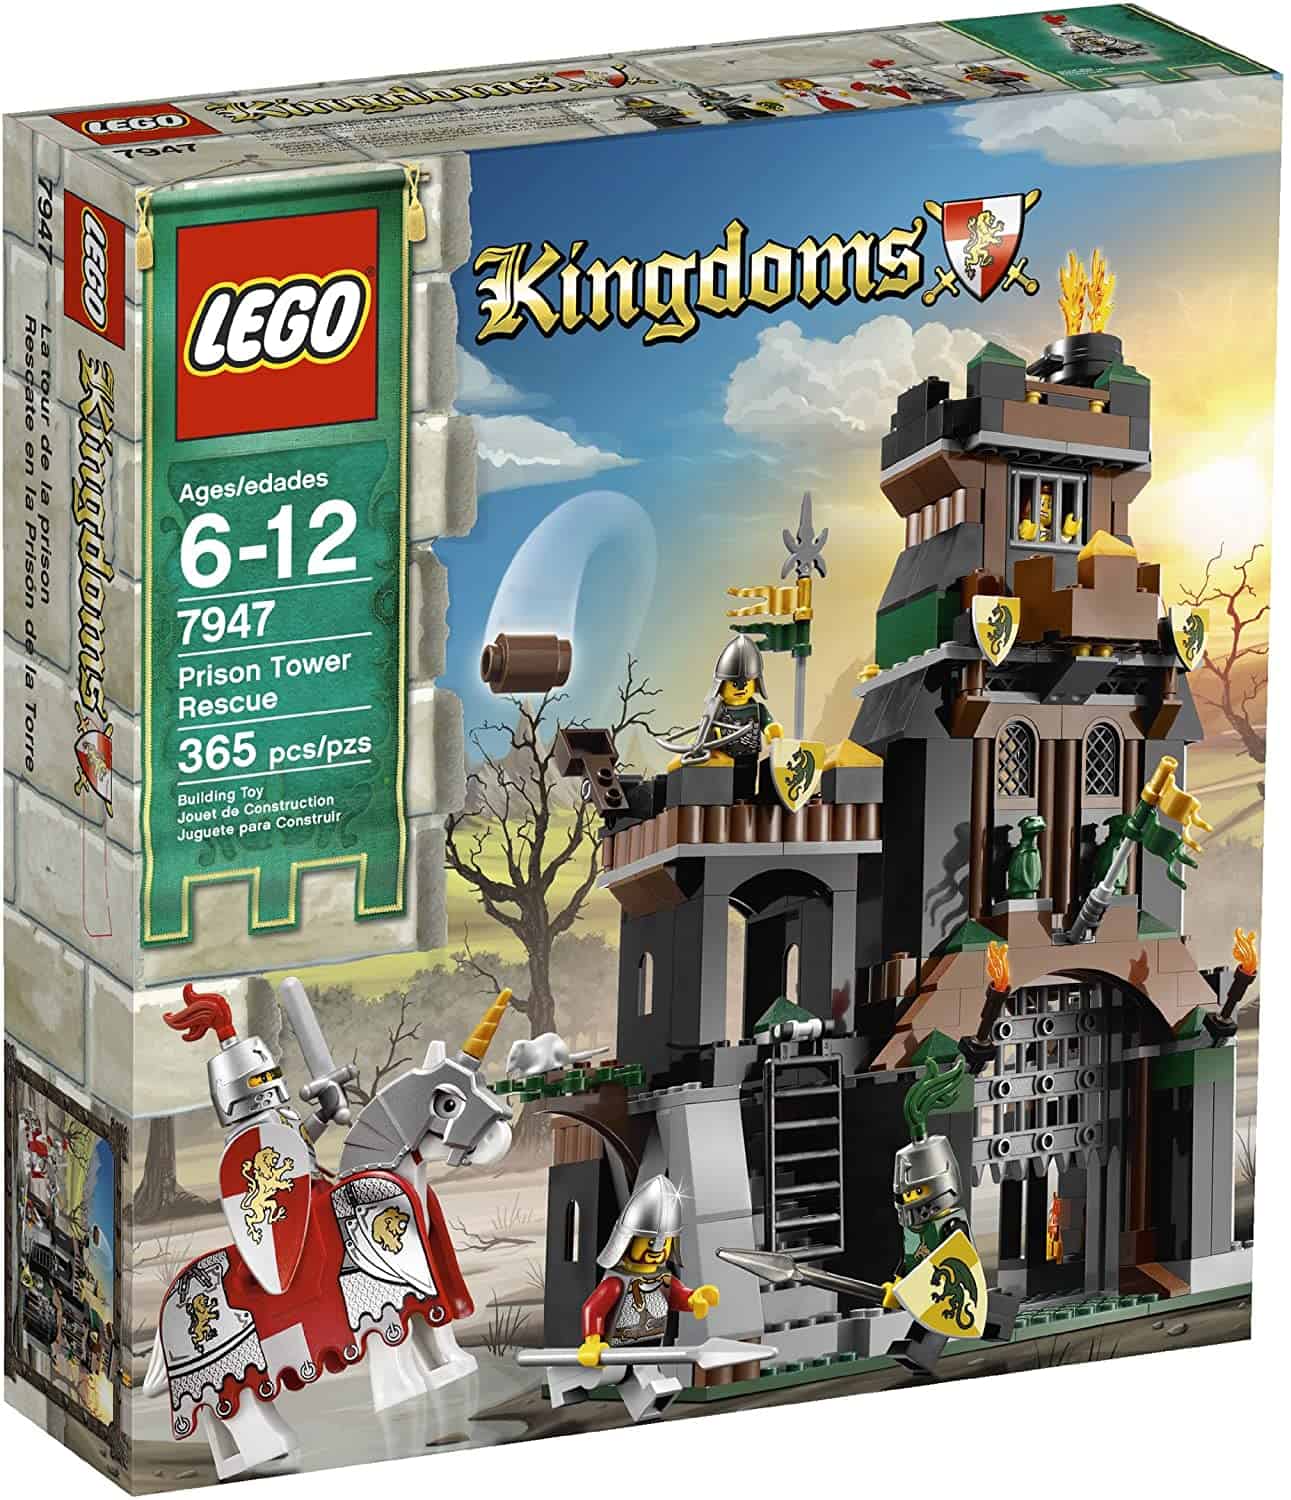 La historia más emocionante de LEGO Kingdoms: Rescue From Prison Tower 7947